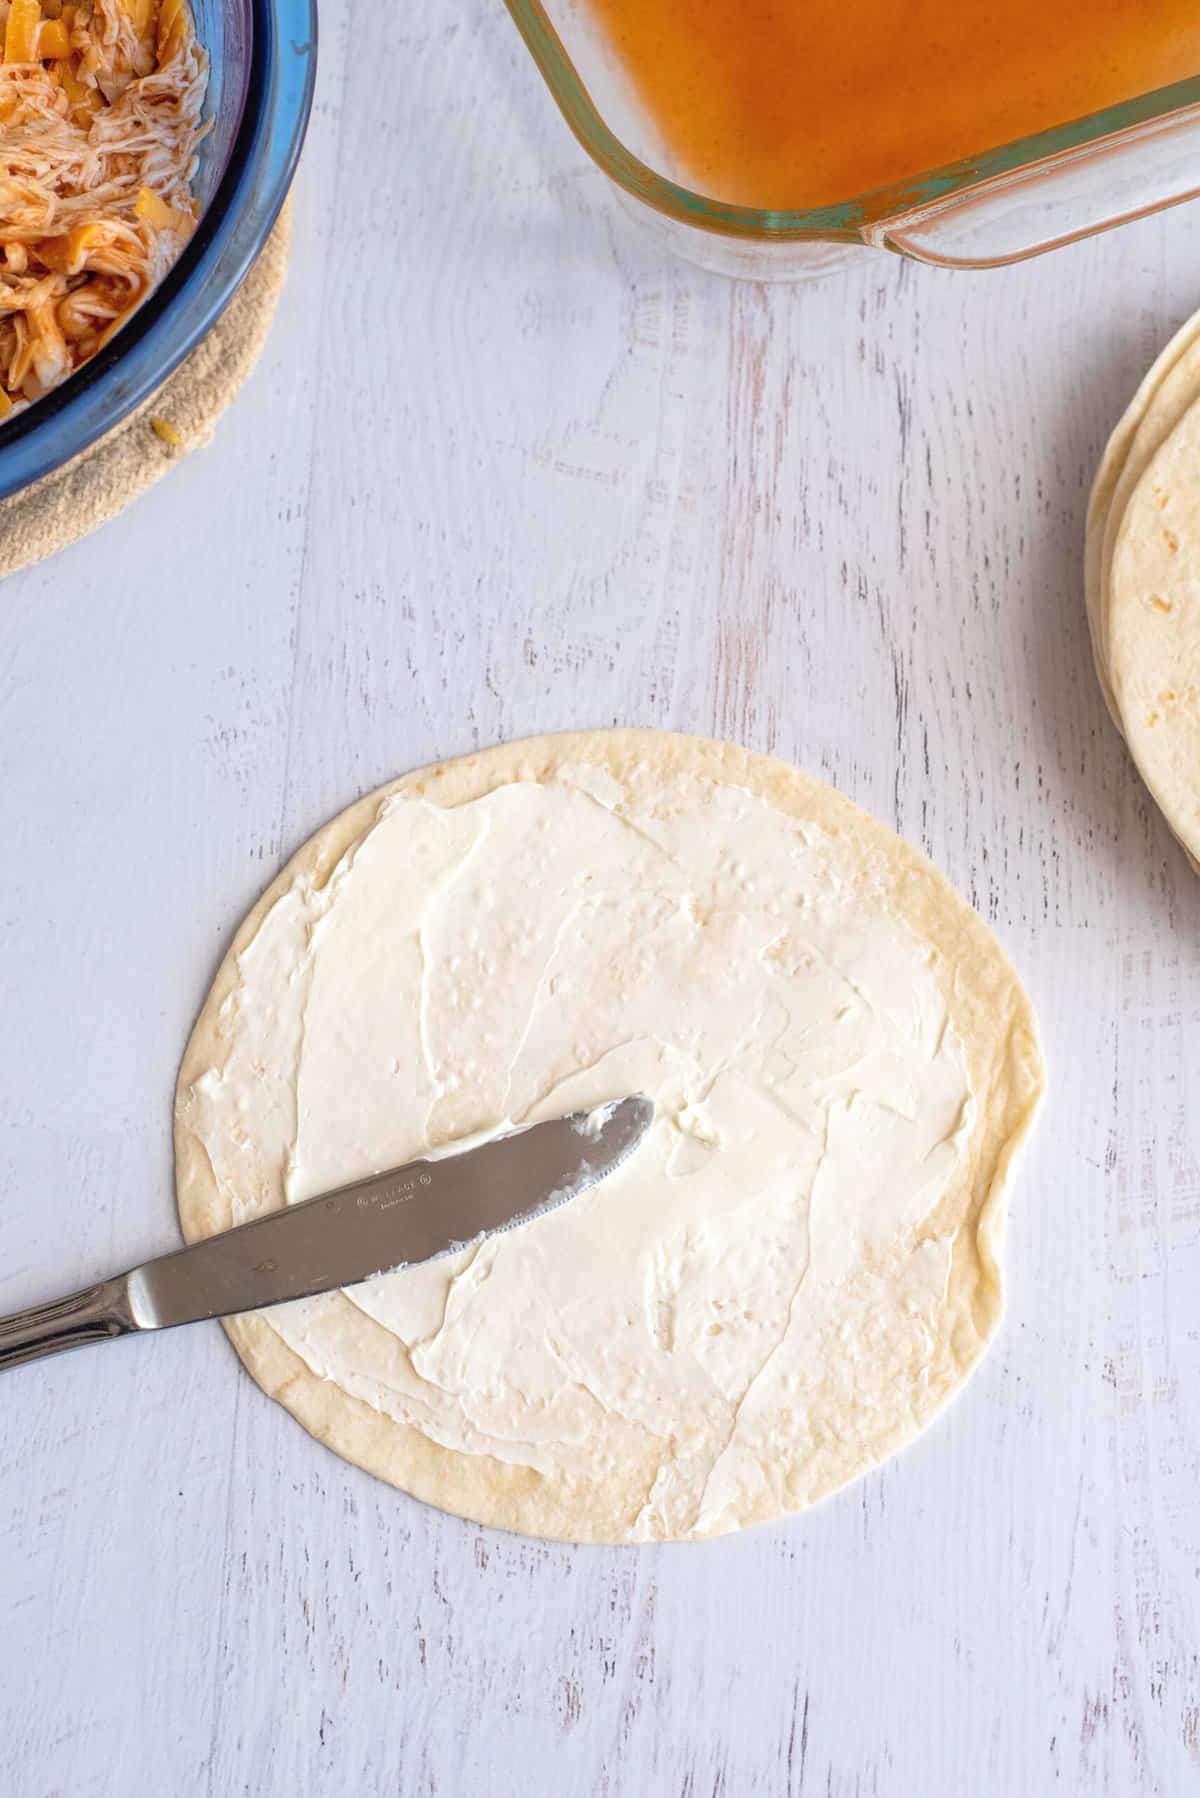  Spread cream cheese on a flour tortilla.  